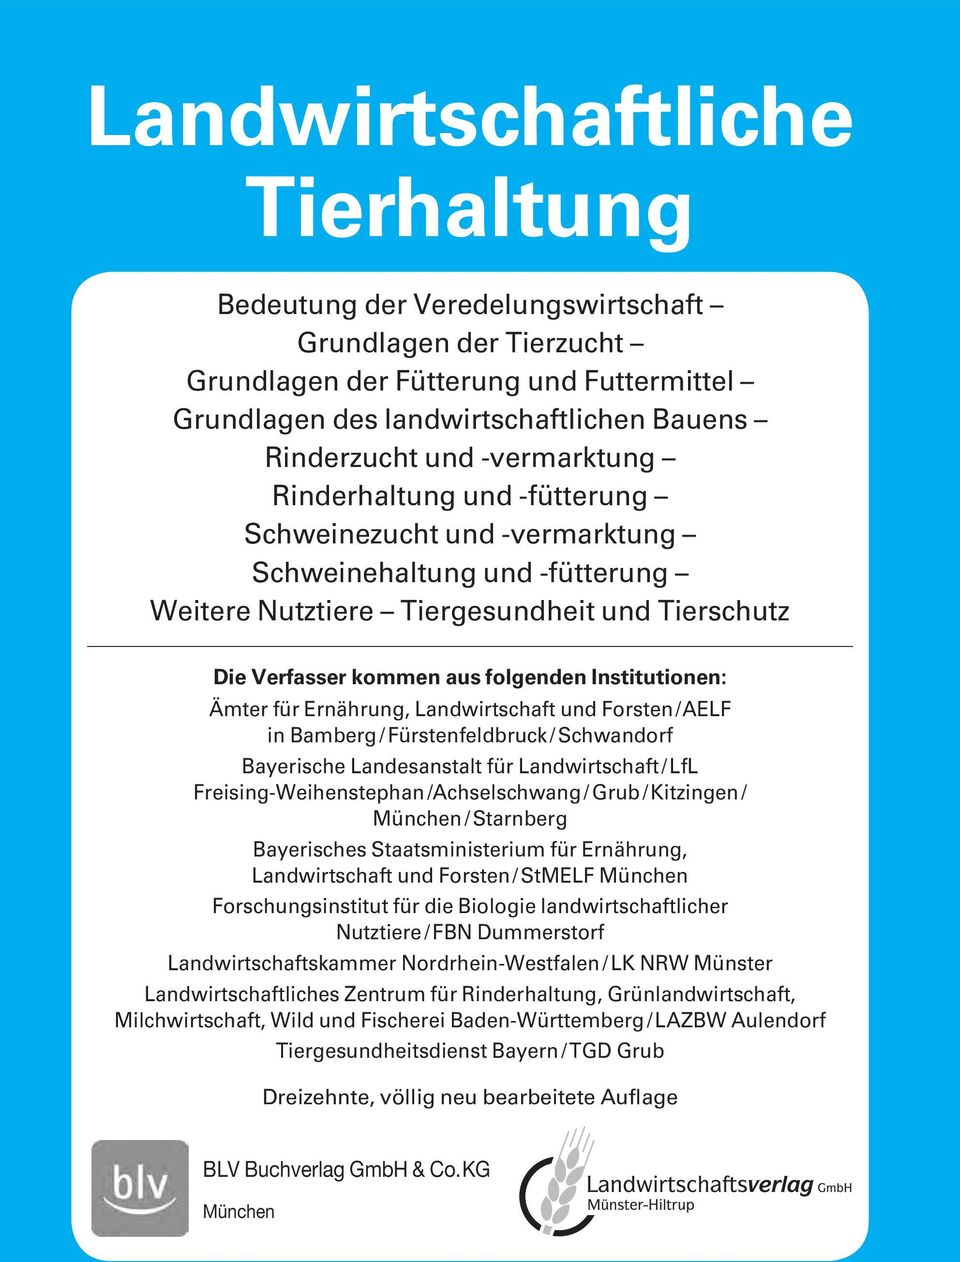 Institutionen: Ämter für Ernährung, Landwirtschaft und Forsten / AELF in Bamberg / Fürstenfeldbruck / Schwandorf Bayerische Landesanstalt für Landwirtschaft / LfL Freising-Weihenstephan